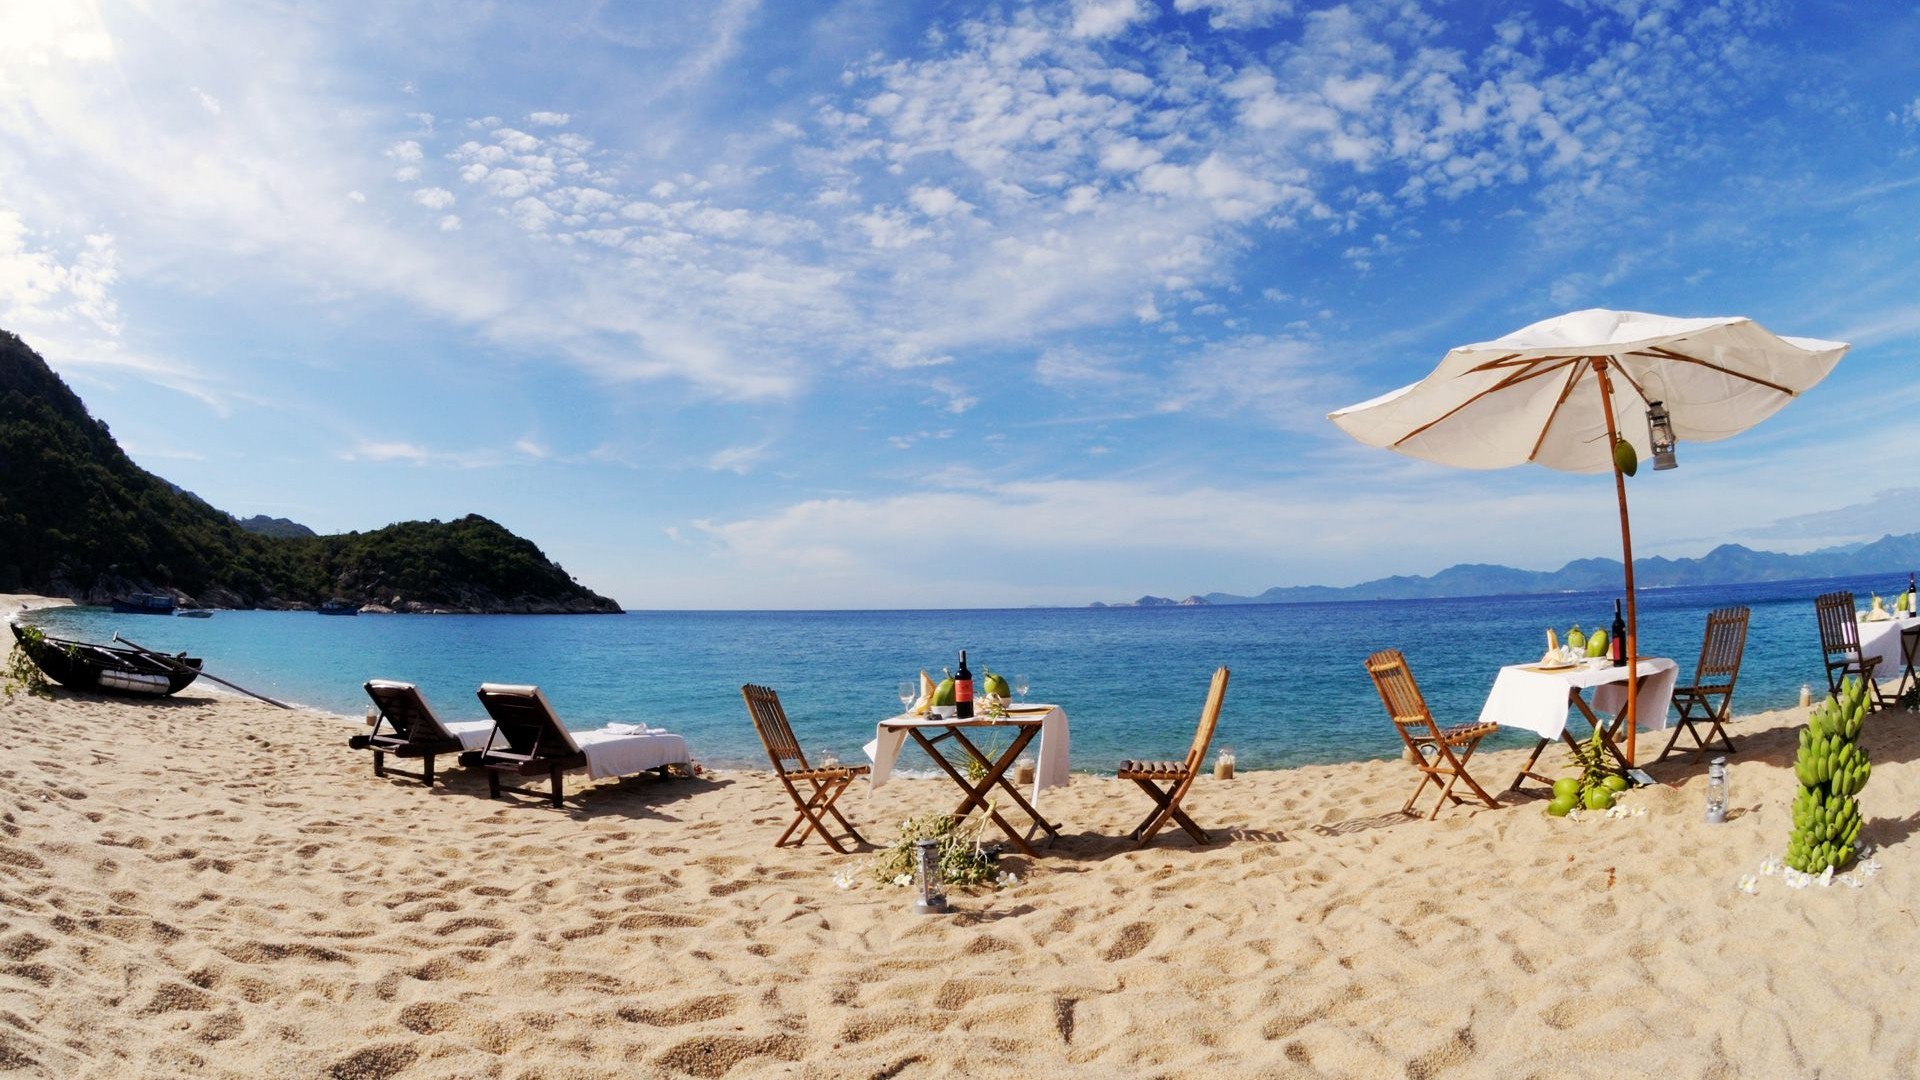 Вьетнам в сентябре 2021: стоит ли ехать и где лучшие курорты по отзывам туристов?